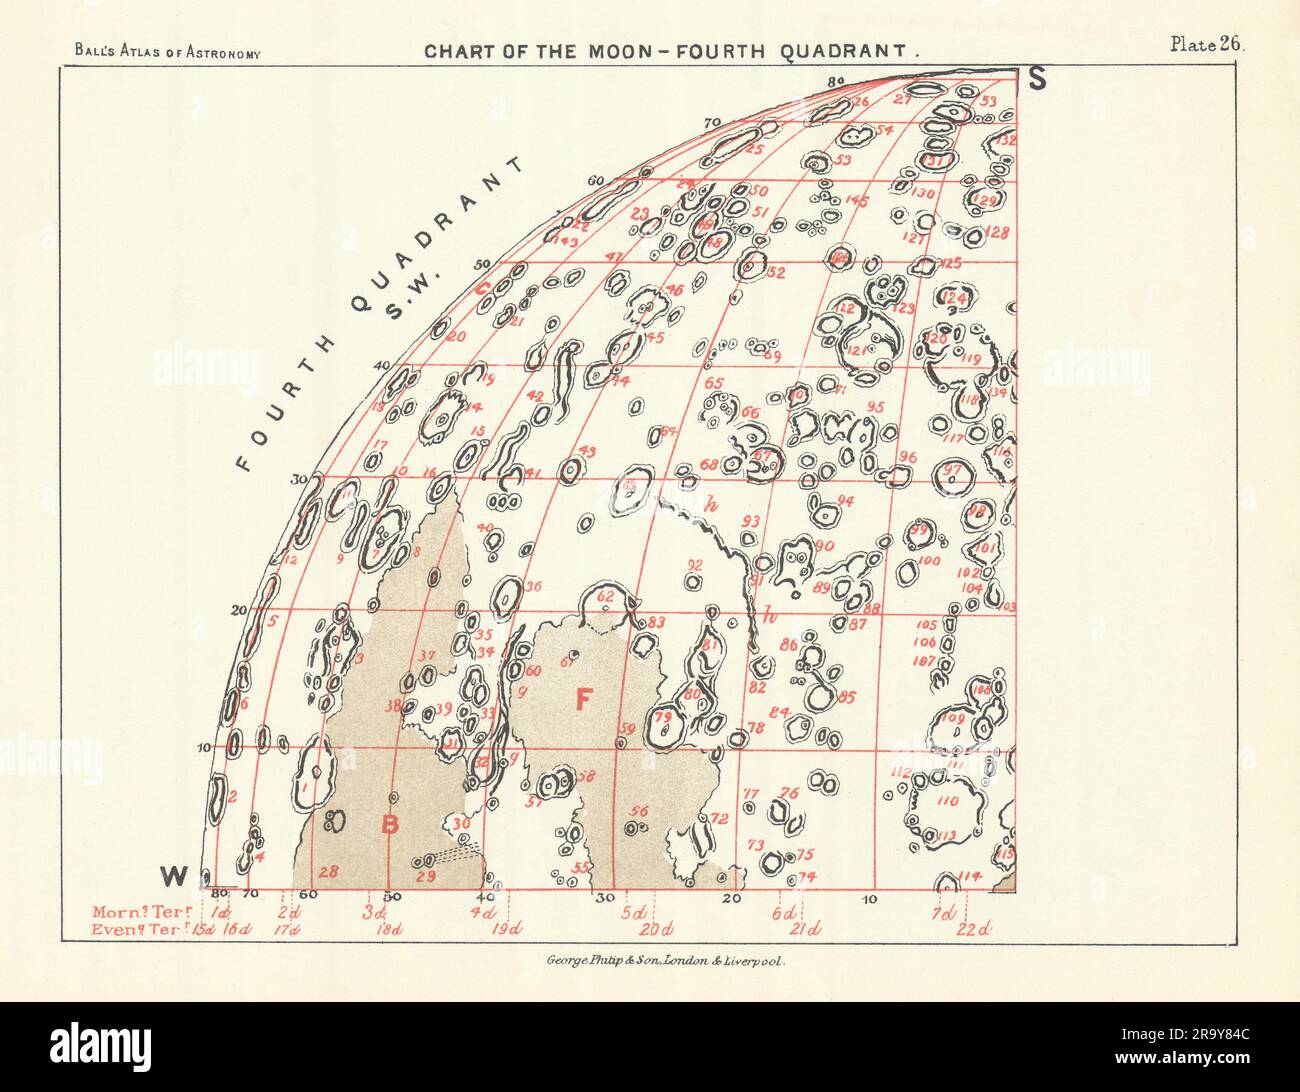 Diagramm des Mond-4.-Quadranten - Südwesten - von Robert Ball. Astronomie-1892-Karte Stockfoto